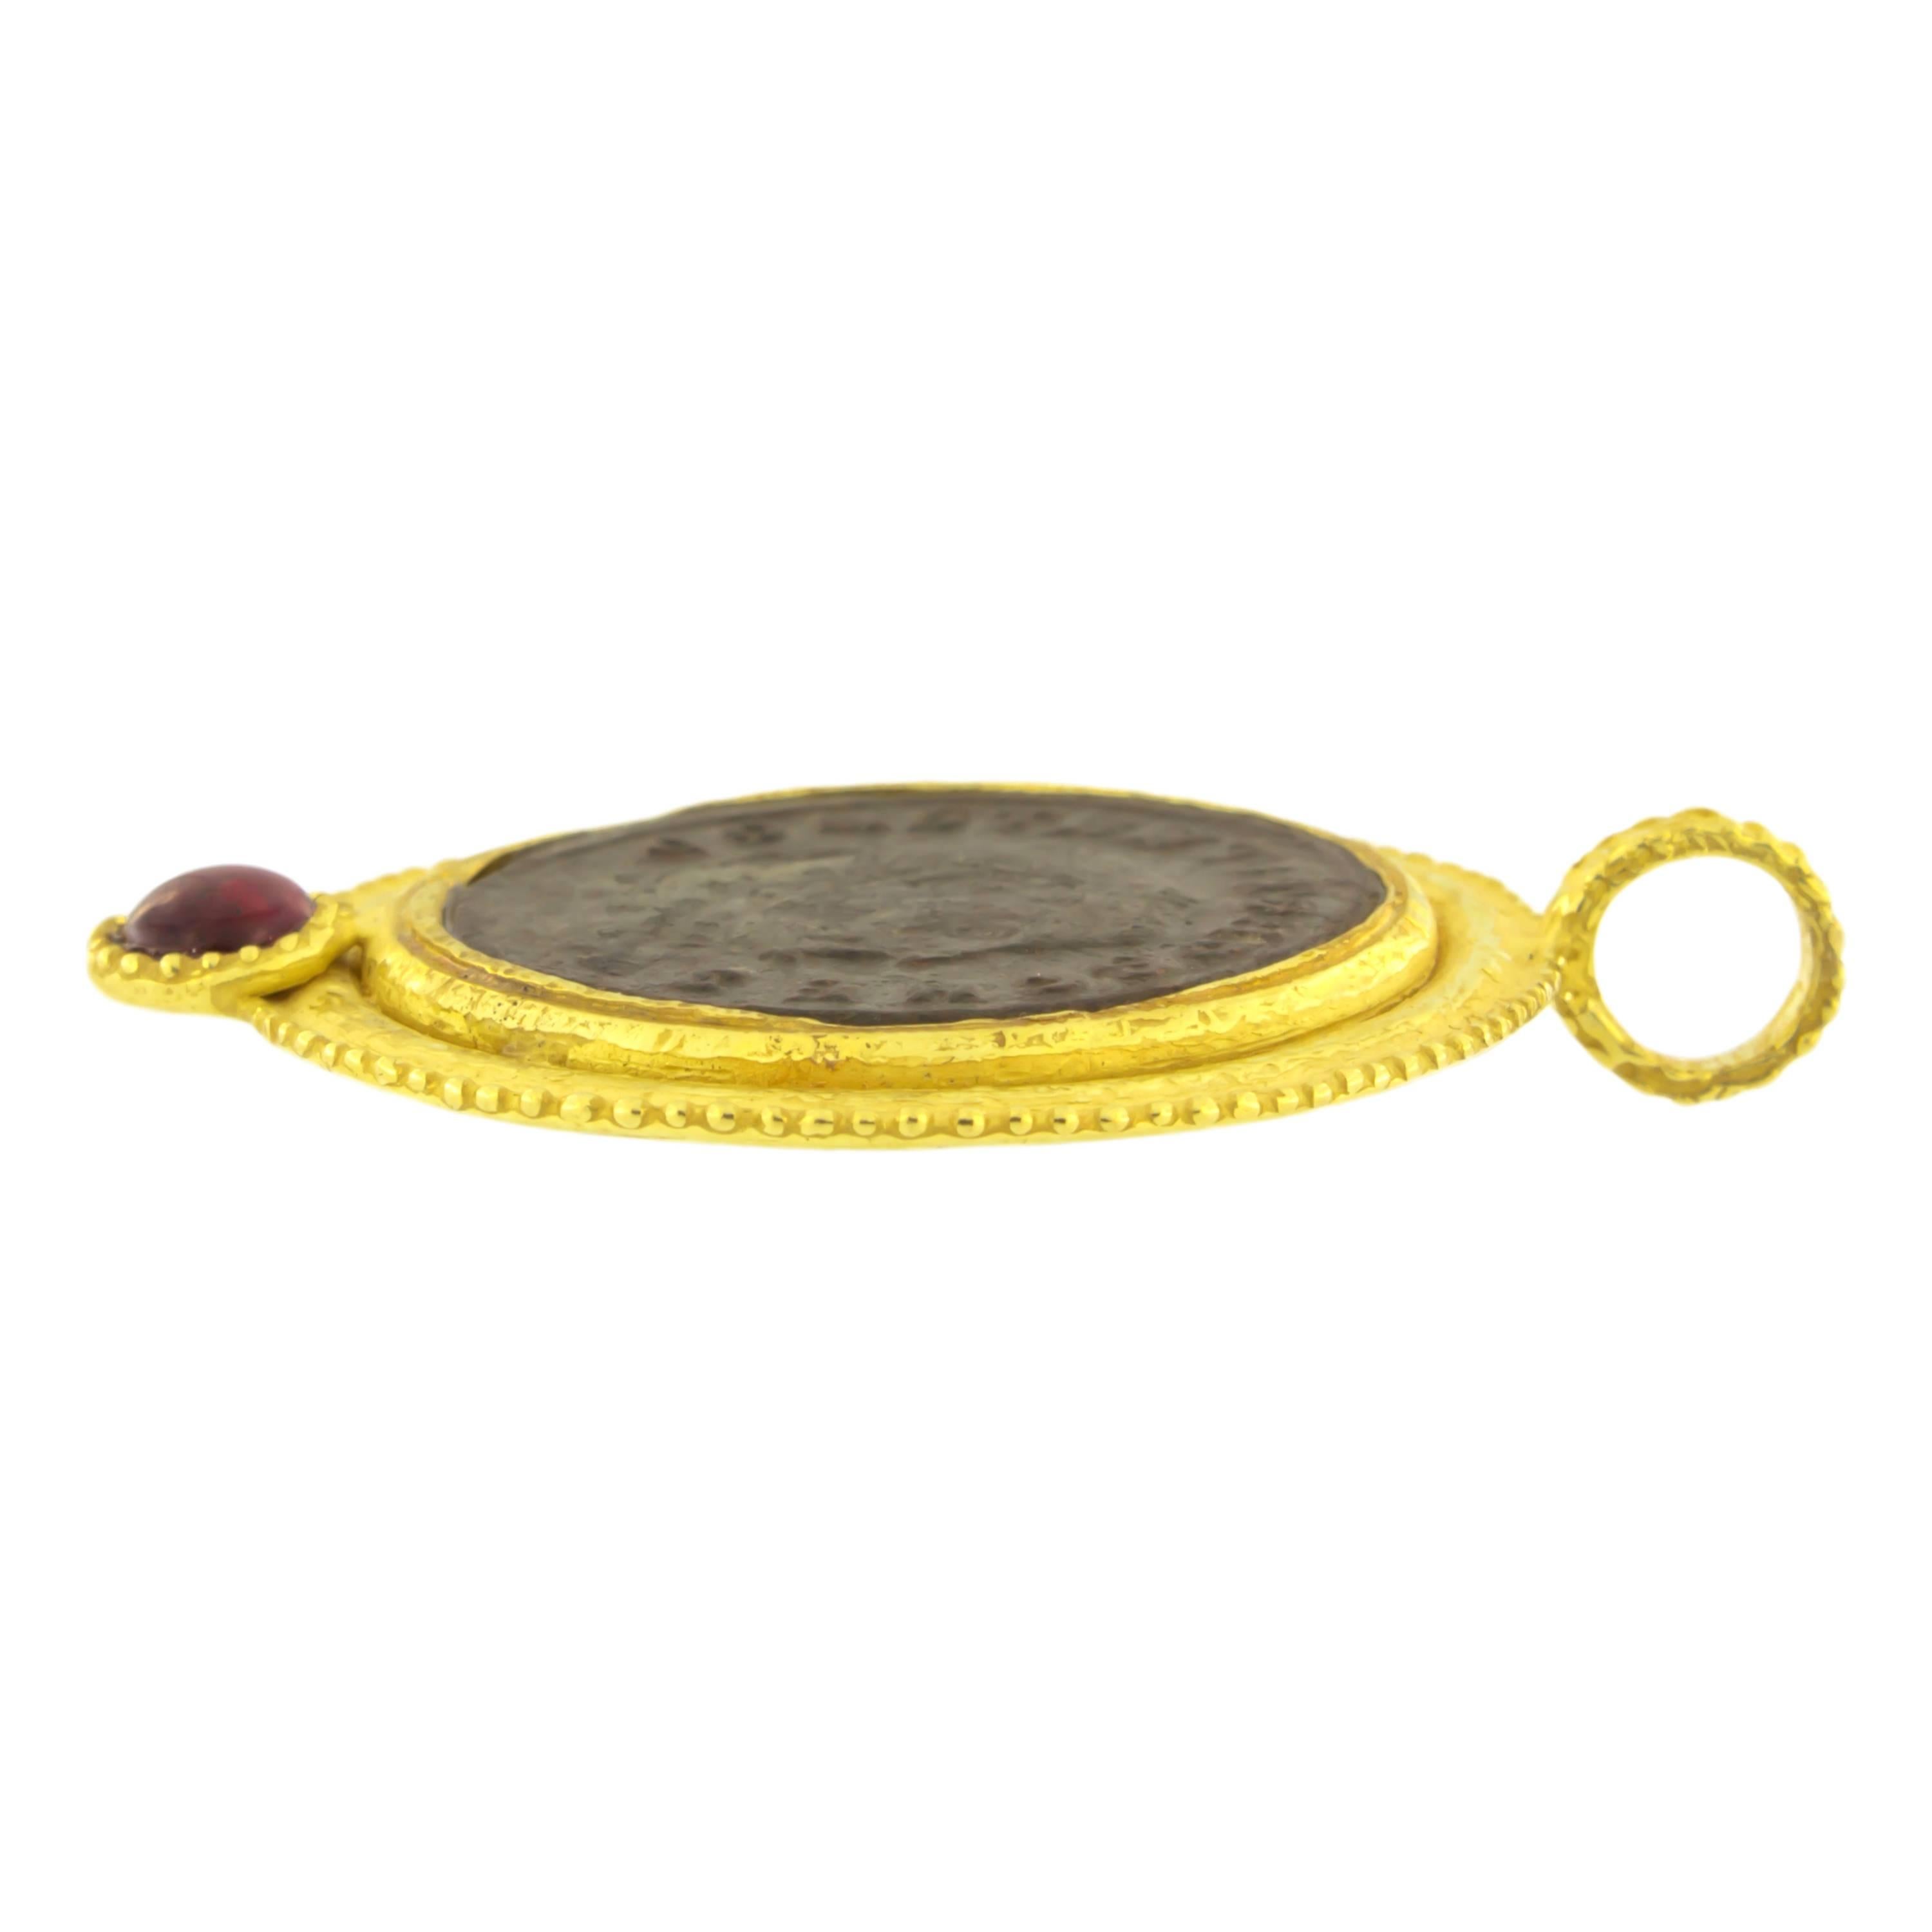 Anhänger aus satiniertem Gelbgold mit antiker römischer Münze und Turmalin, aus der Collection'S Roma, handgefertigt im Wachsausschmelzverfahren.

Das Wachsausschmelzverfahren, eine der ältesten Techniken zur Herstellung von Schmuck, bildet die